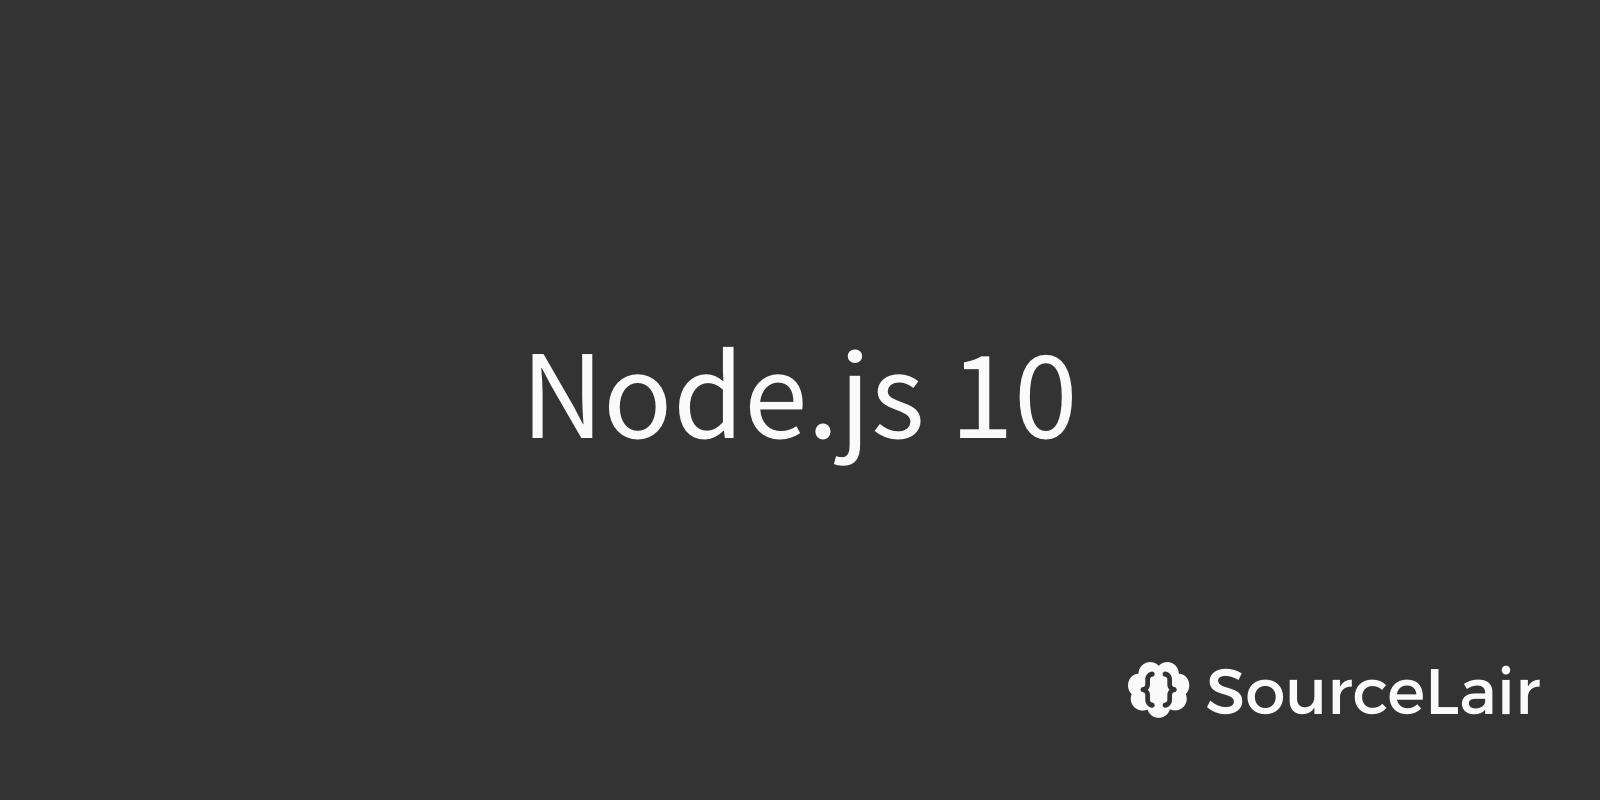 Node.js 10 lands on SourceLair